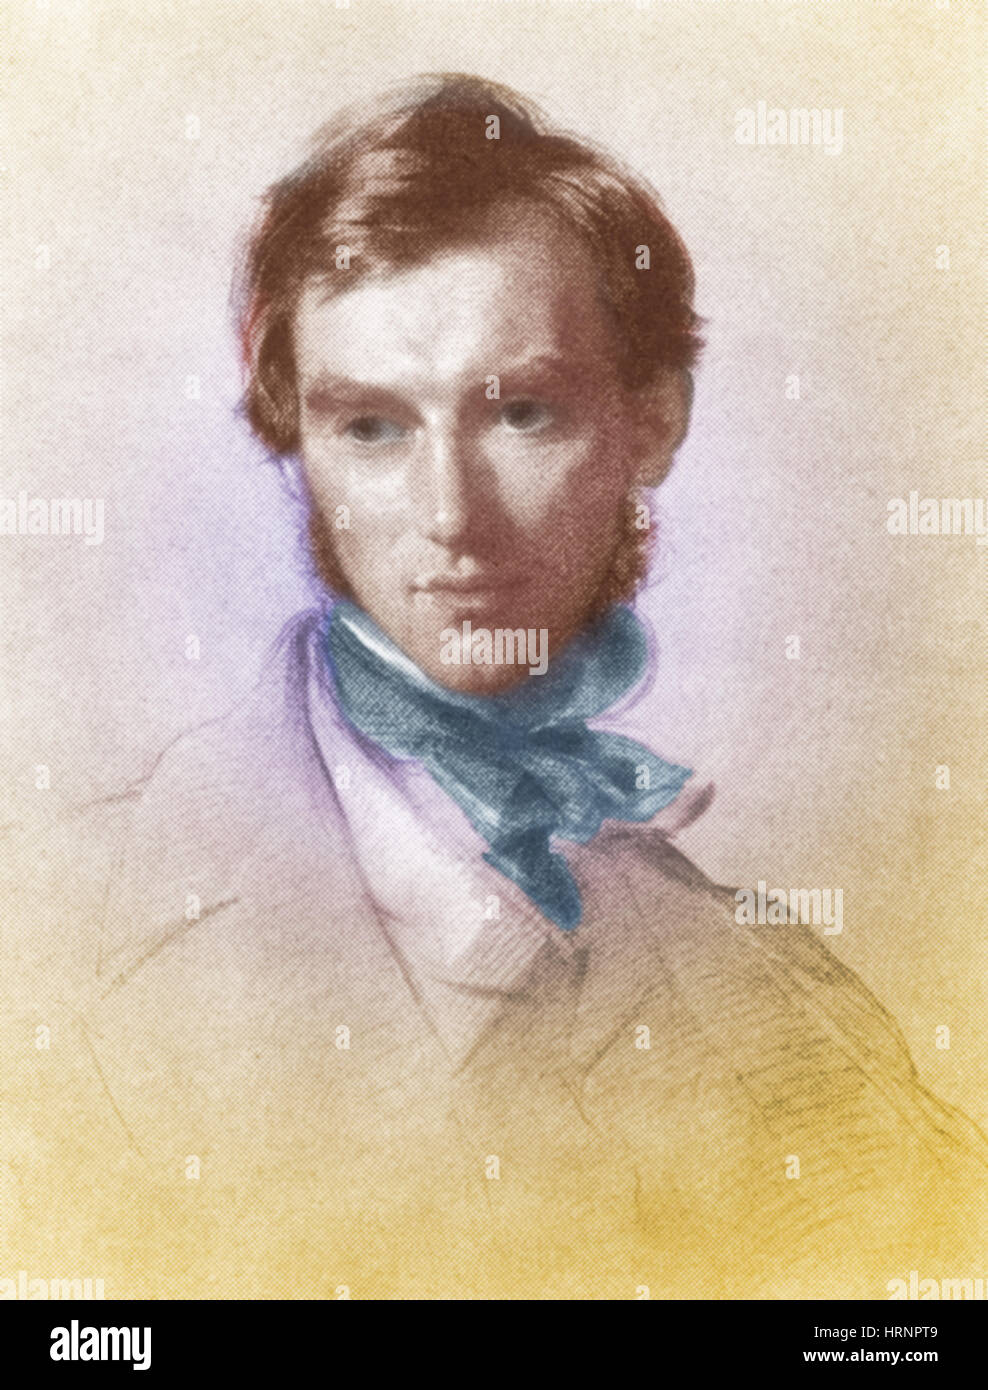 Joseph Dalton Hooker, English Botanist, 1855 Stock Photo